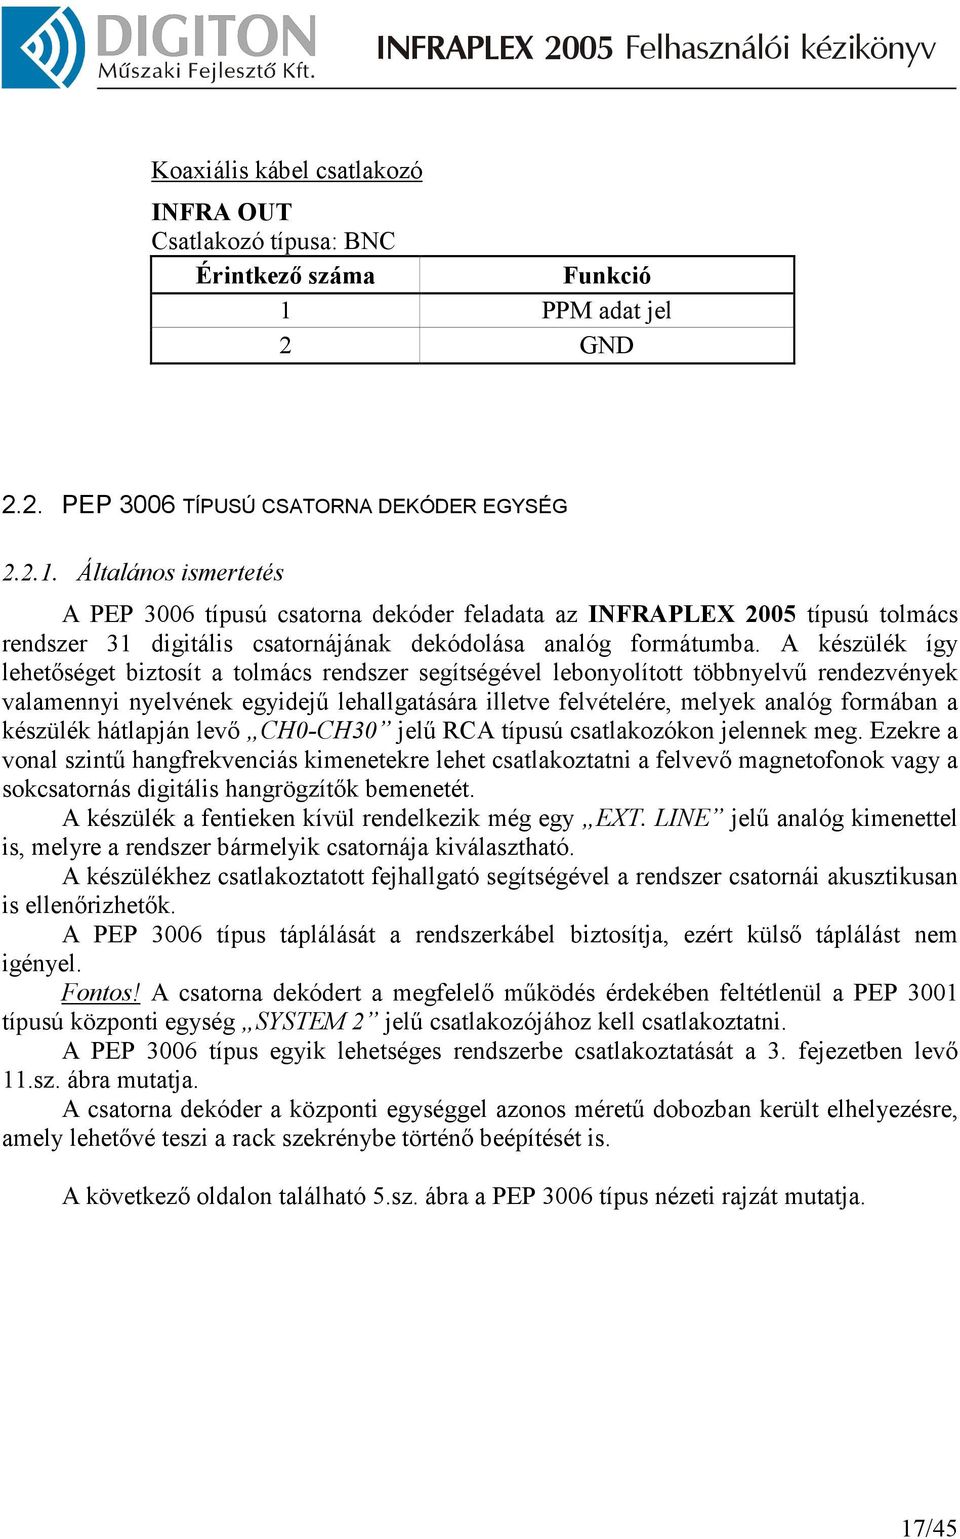 Általános ismertetés A PEP 3006 típusú csatorna dekóder feladata az INFRAPLEX 2005 típusú tolmács rendszer 31 digitális csatornájának dekódolása analóg formátumba.